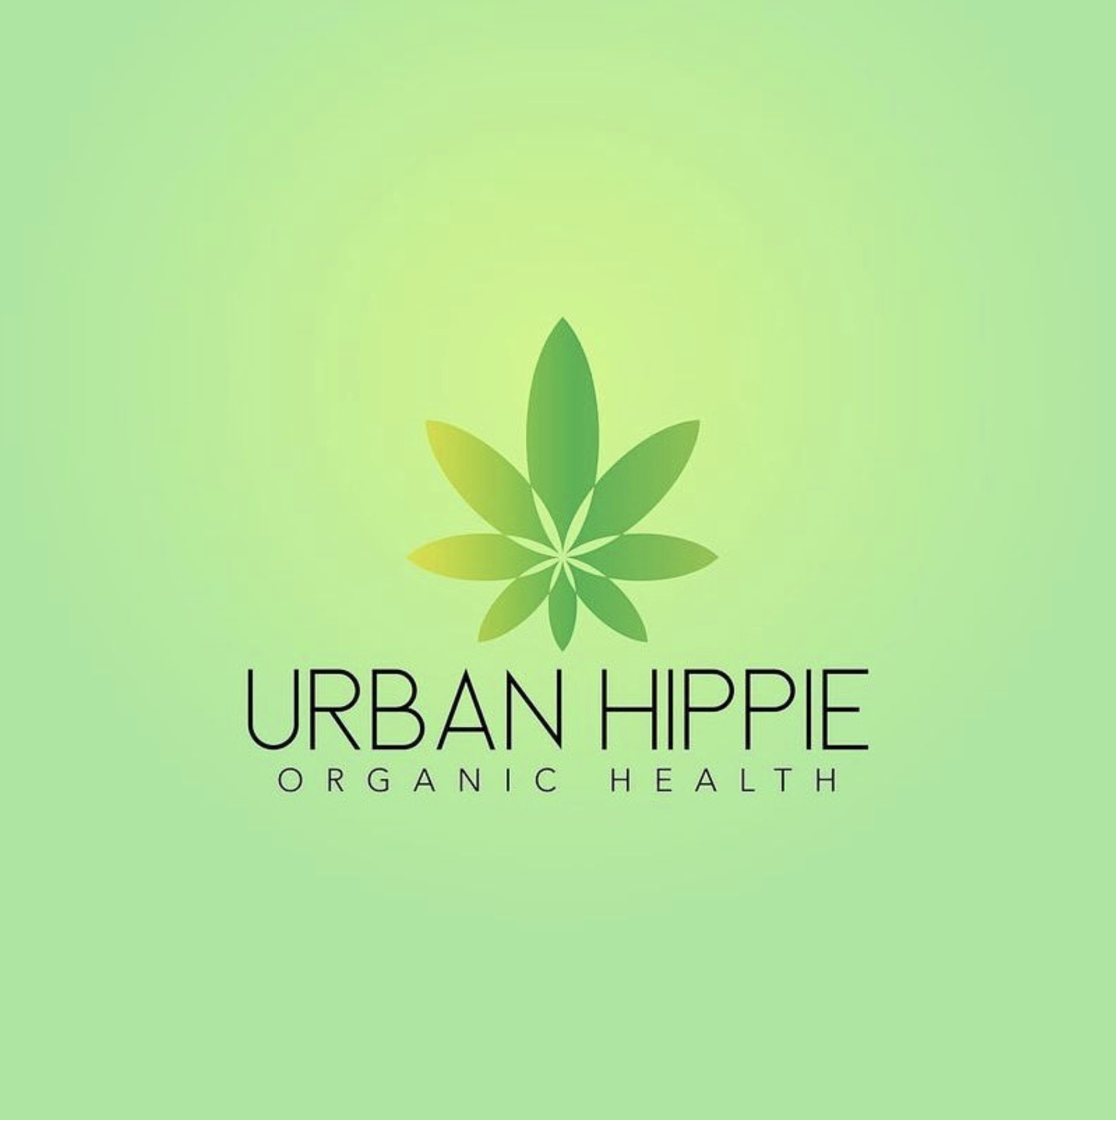 Urban Hippie Logo